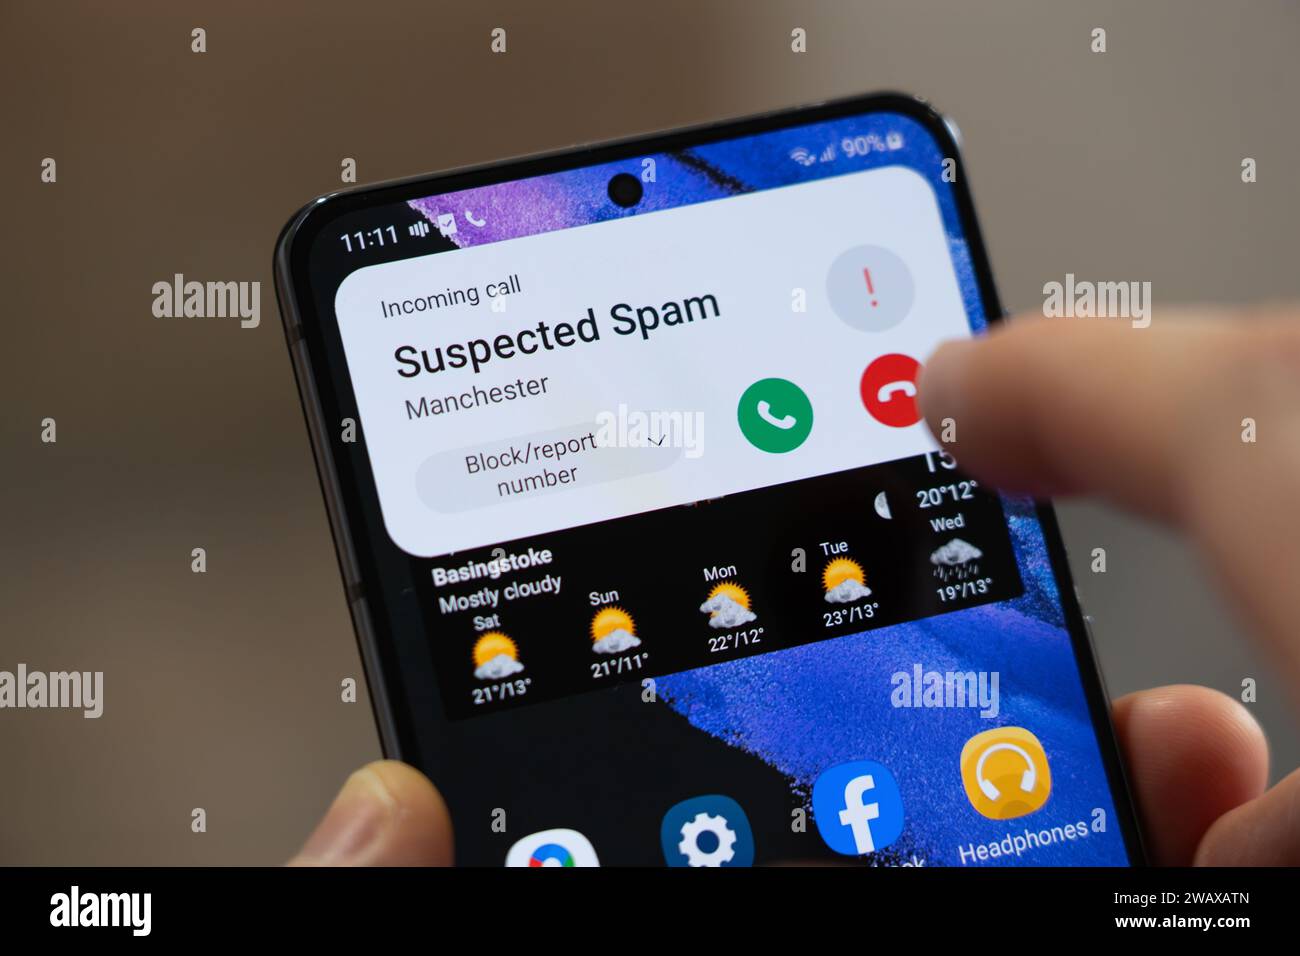 Une personne sur le point de raccrocher lors d'un appel entrant répertorié comme « spam présumé » par un smartphone Android, Royaume-Uni. Thème : appels spam, appel frauduleux, ICO Banque D'Images